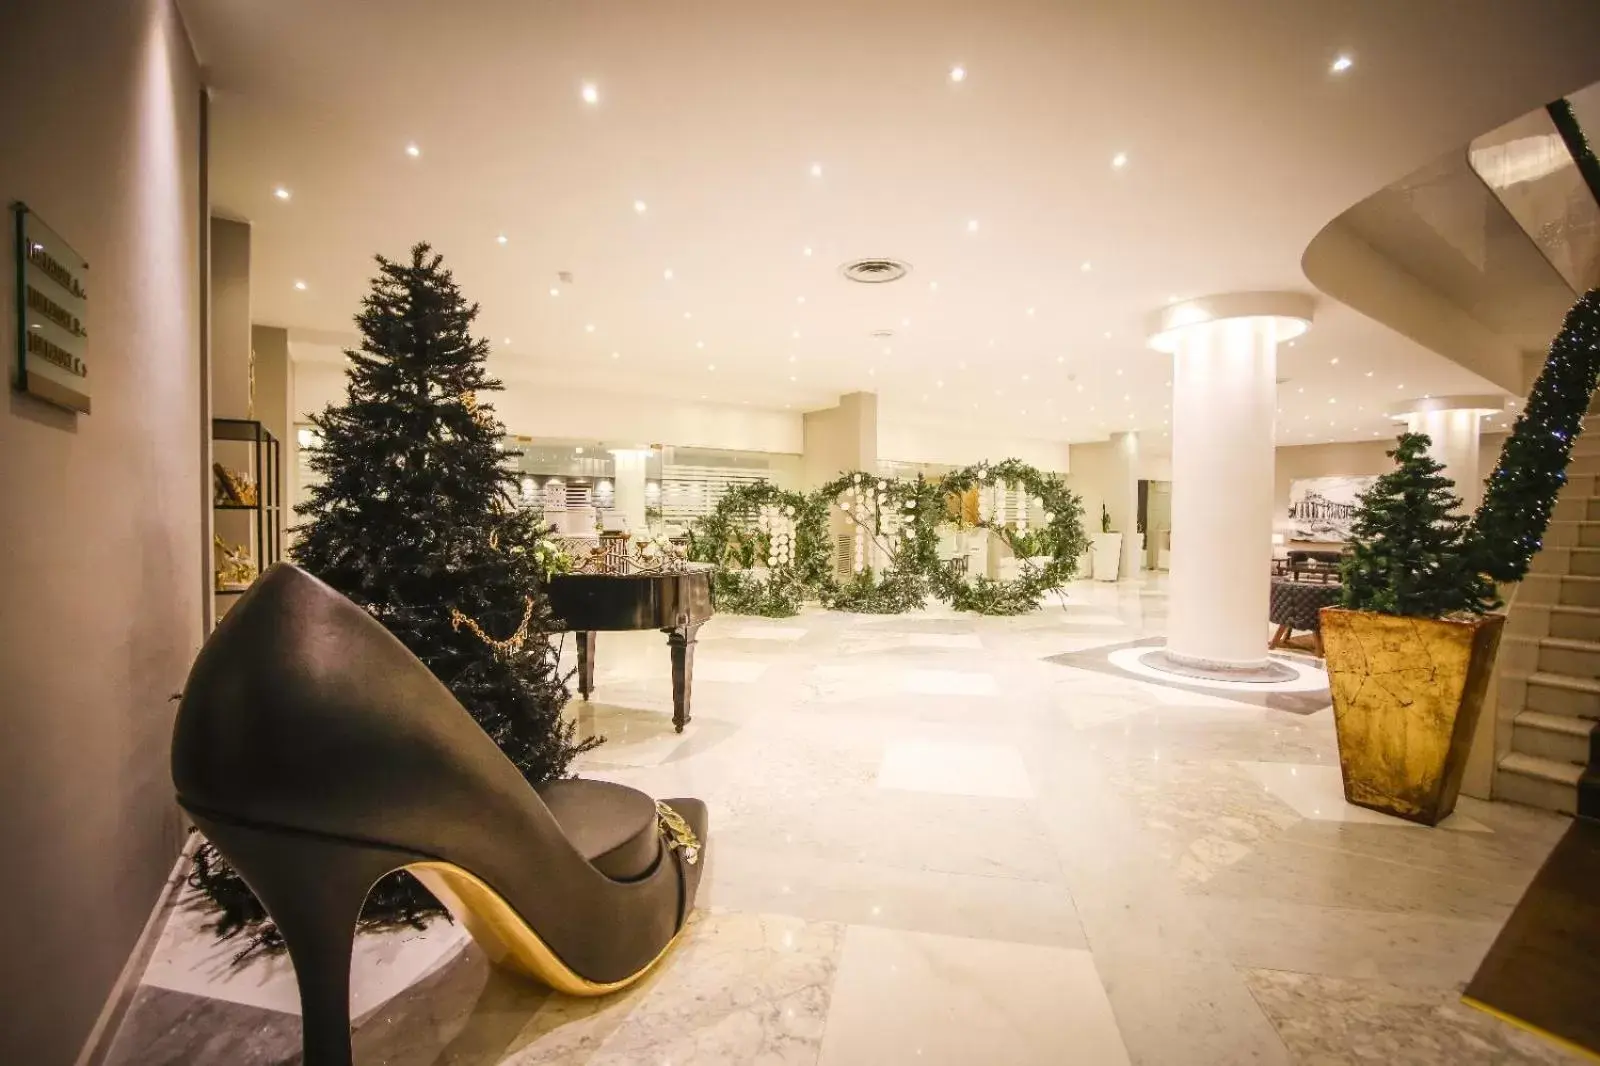 Lobby or reception, Lobby/Reception in Mec Paestum Hotel